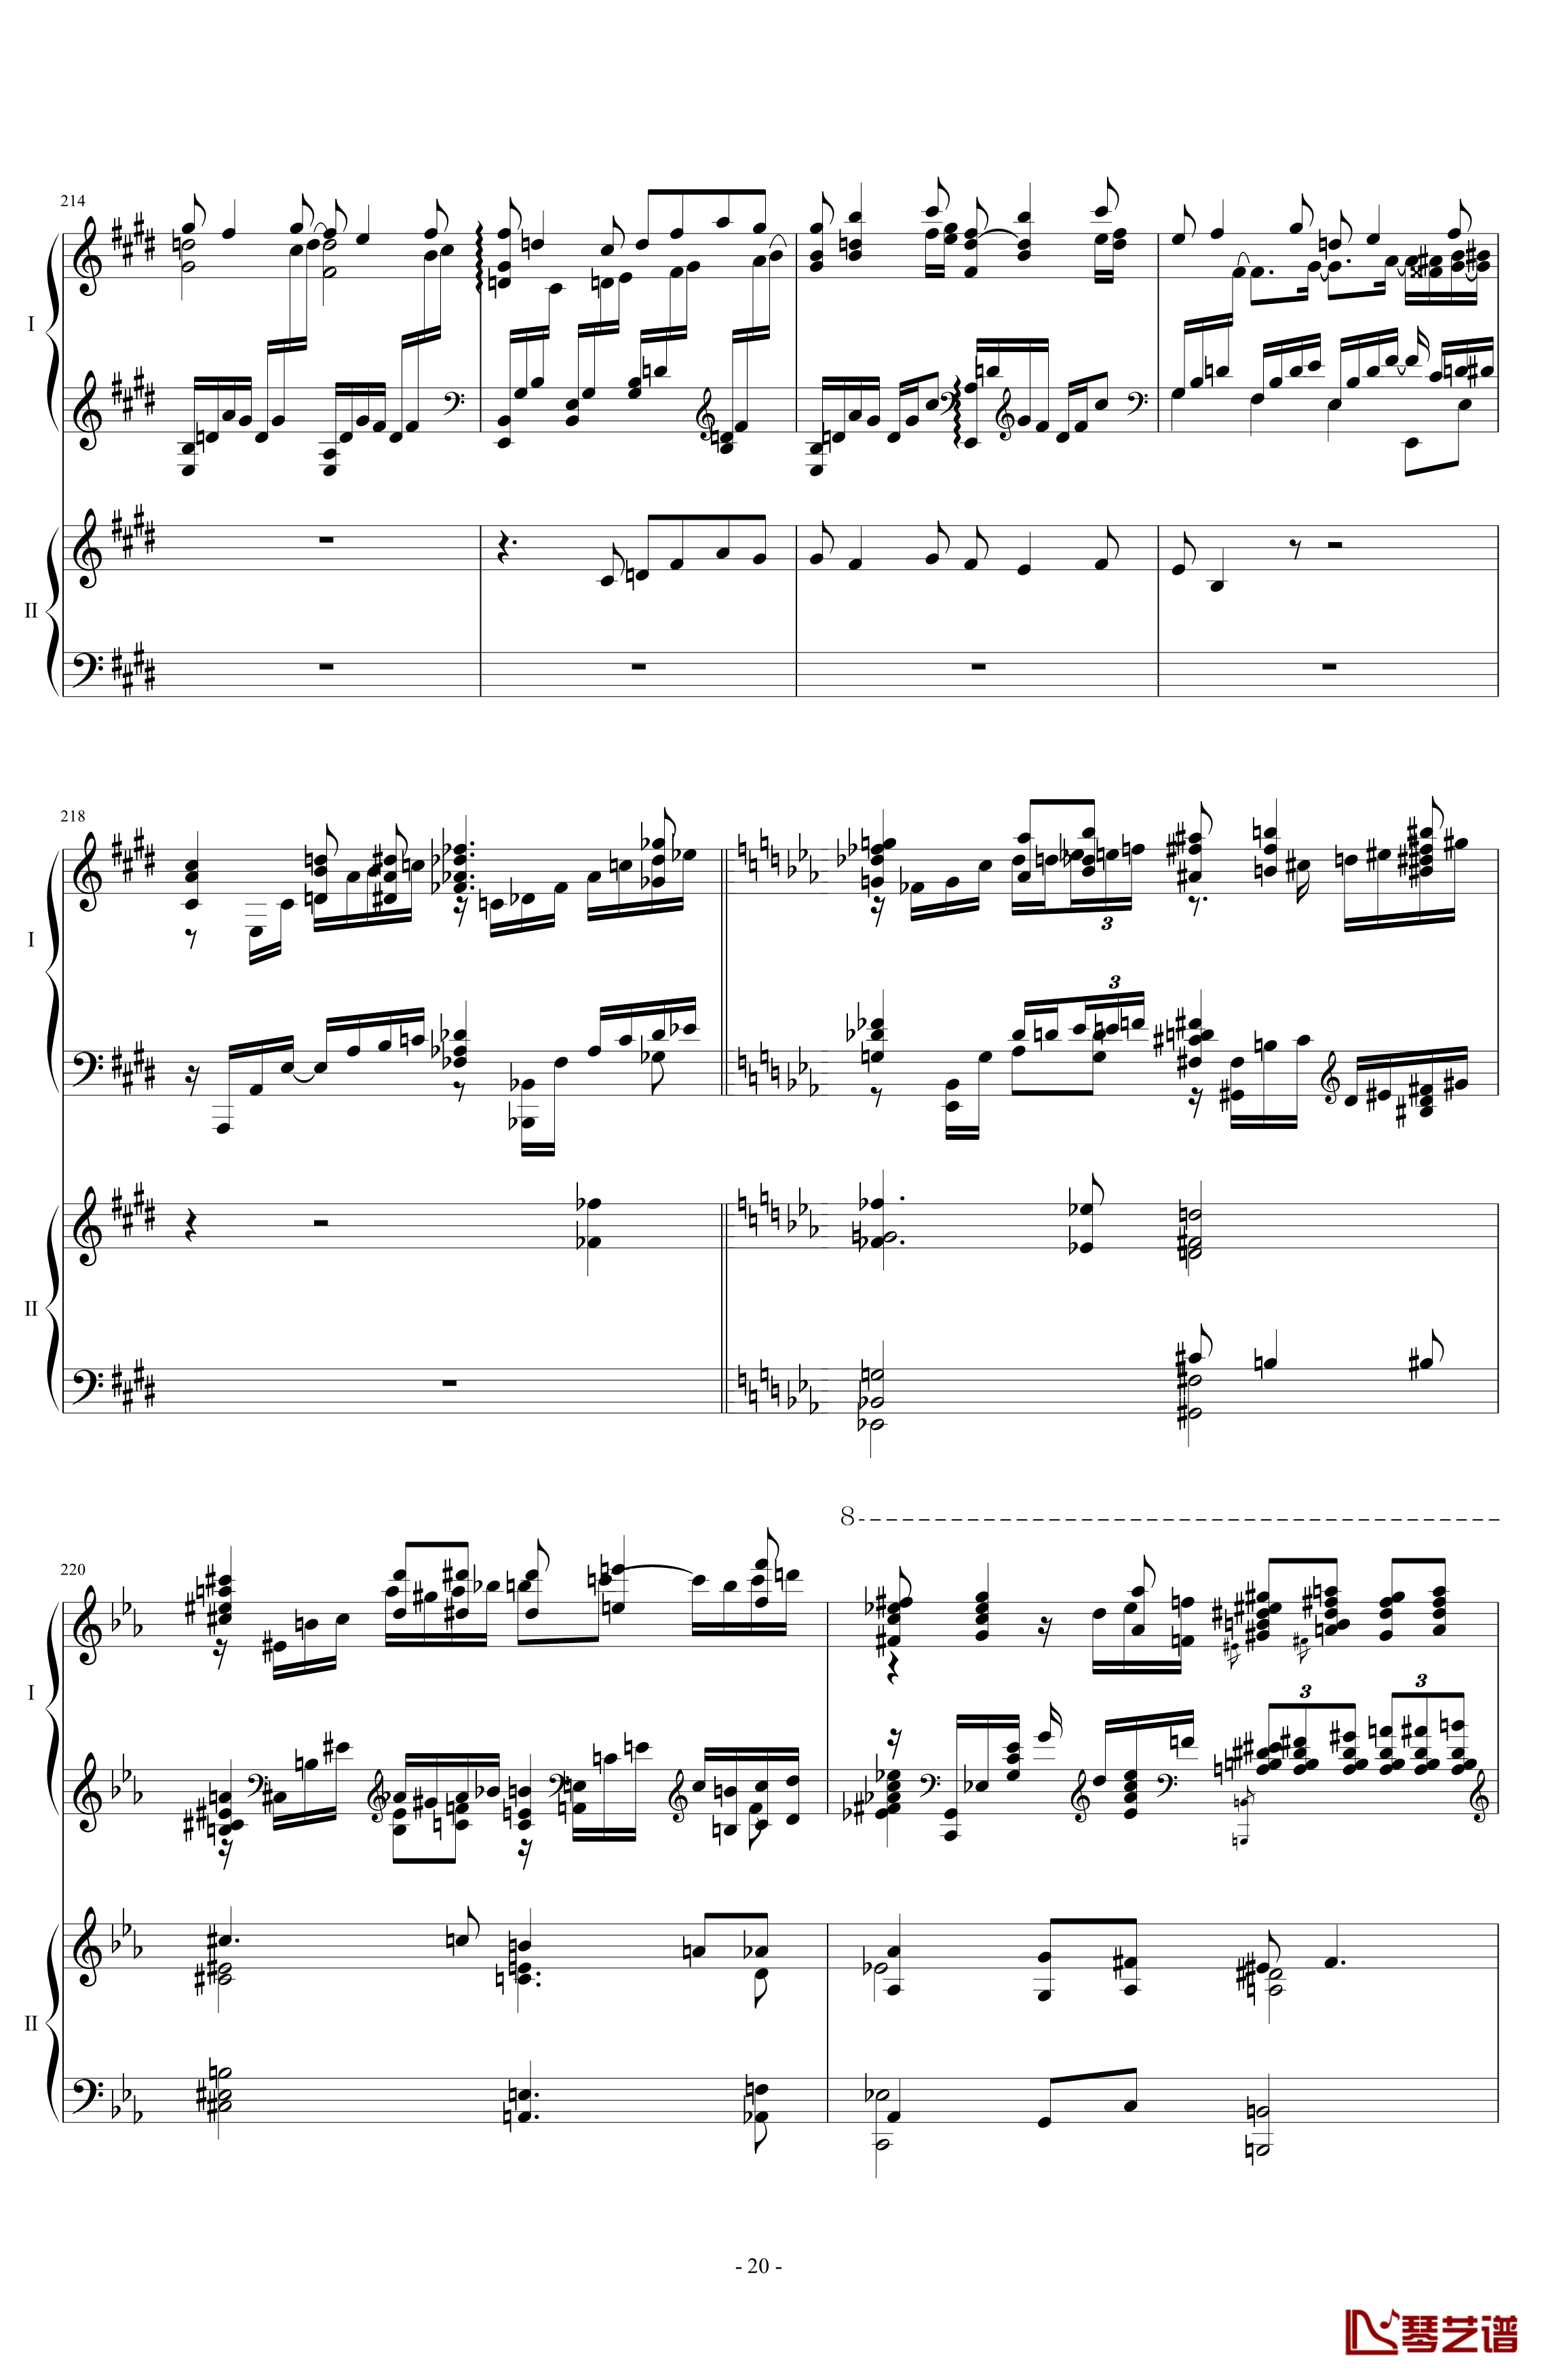 拉三第三乐章41页双钢琴钢琴谱-最难钢琴曲-拉赫马尼若夫20